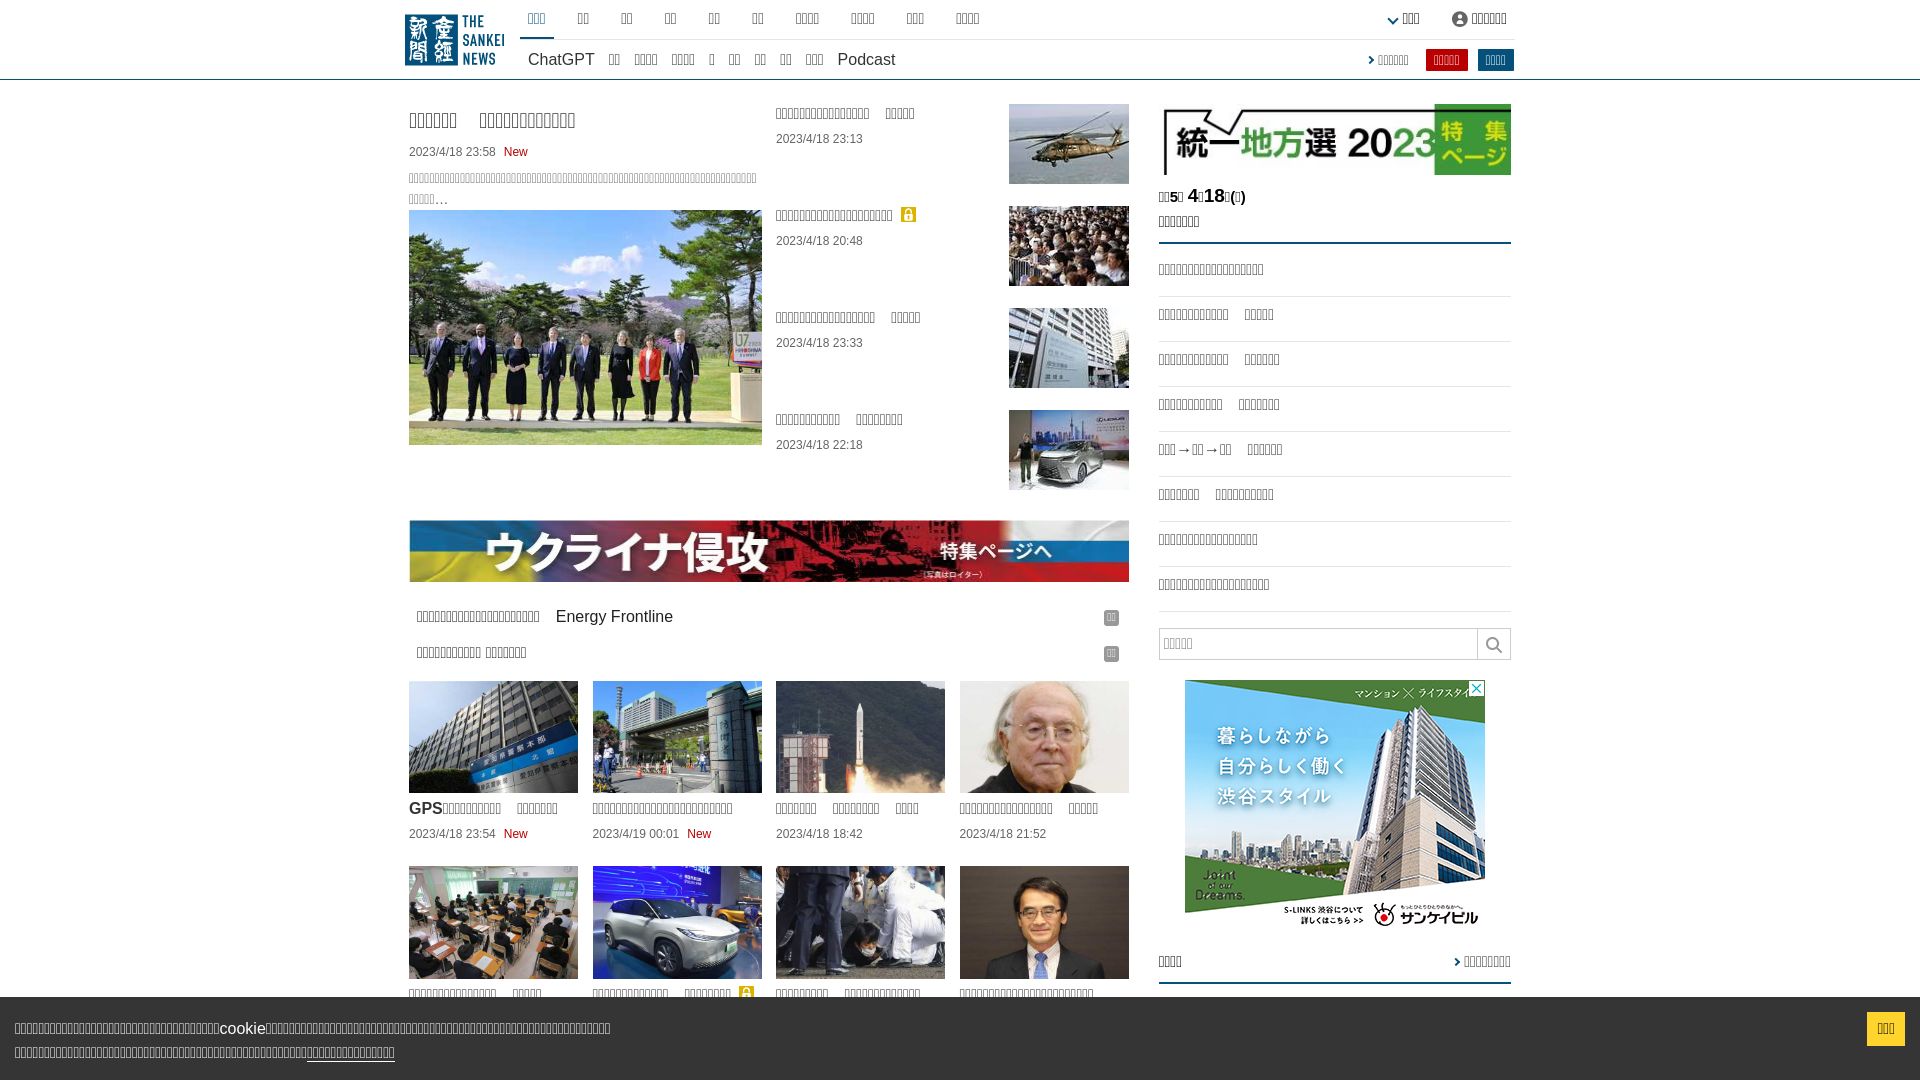 État du site web sankei.com est   EN LIGNE